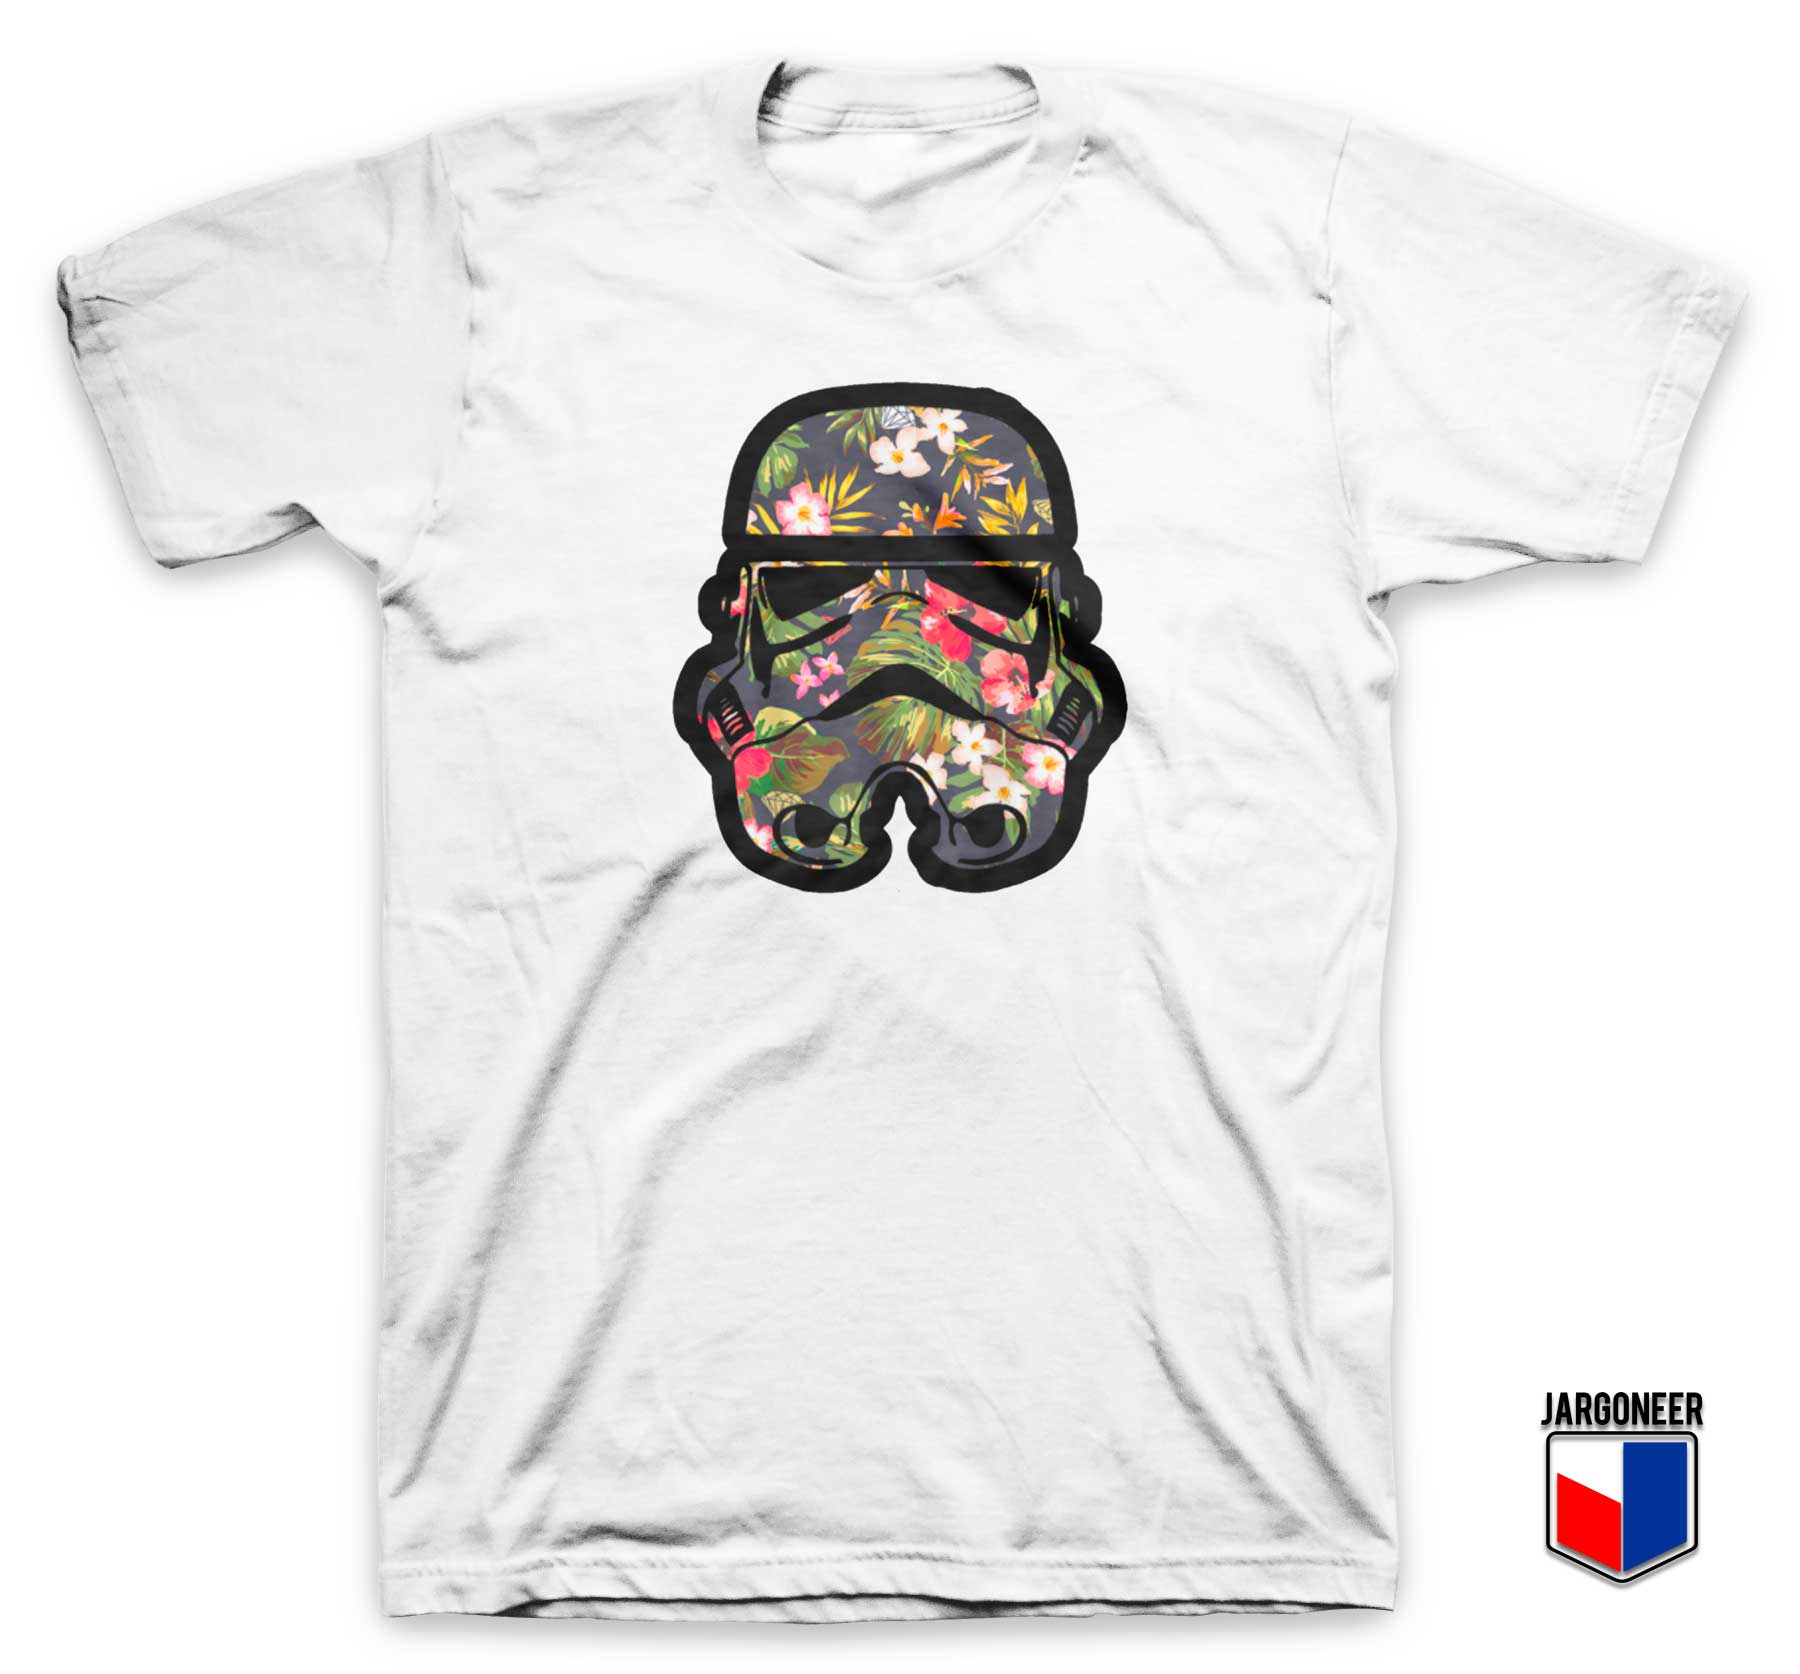 Stormtrooper Floral T Shirt - Shop Unique Graphic Cool Shirt Designs